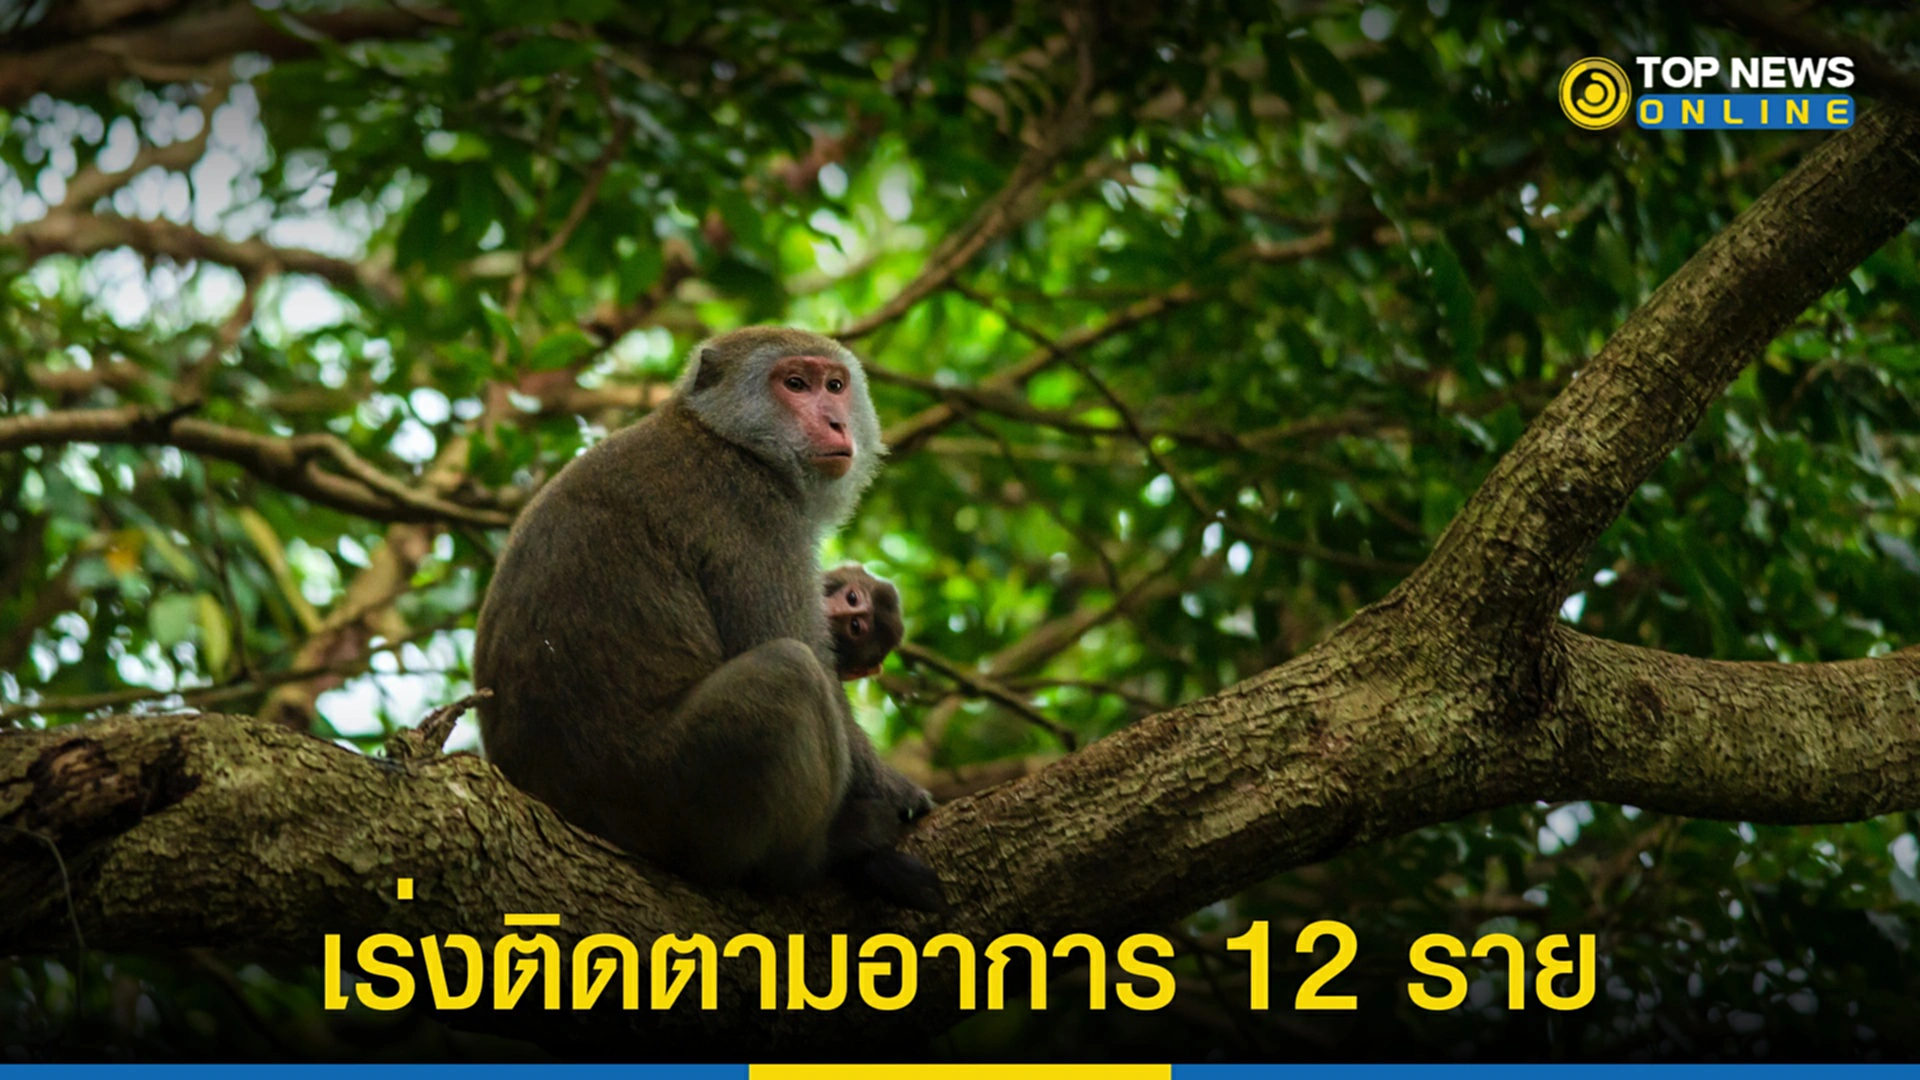 ฝีดาษลิง, ฝีดาษวานร, monkeypox, ฝีดาษลิงในไทย, ออสเตรเลีย, ผู้ติดเชื้อ, สธ.